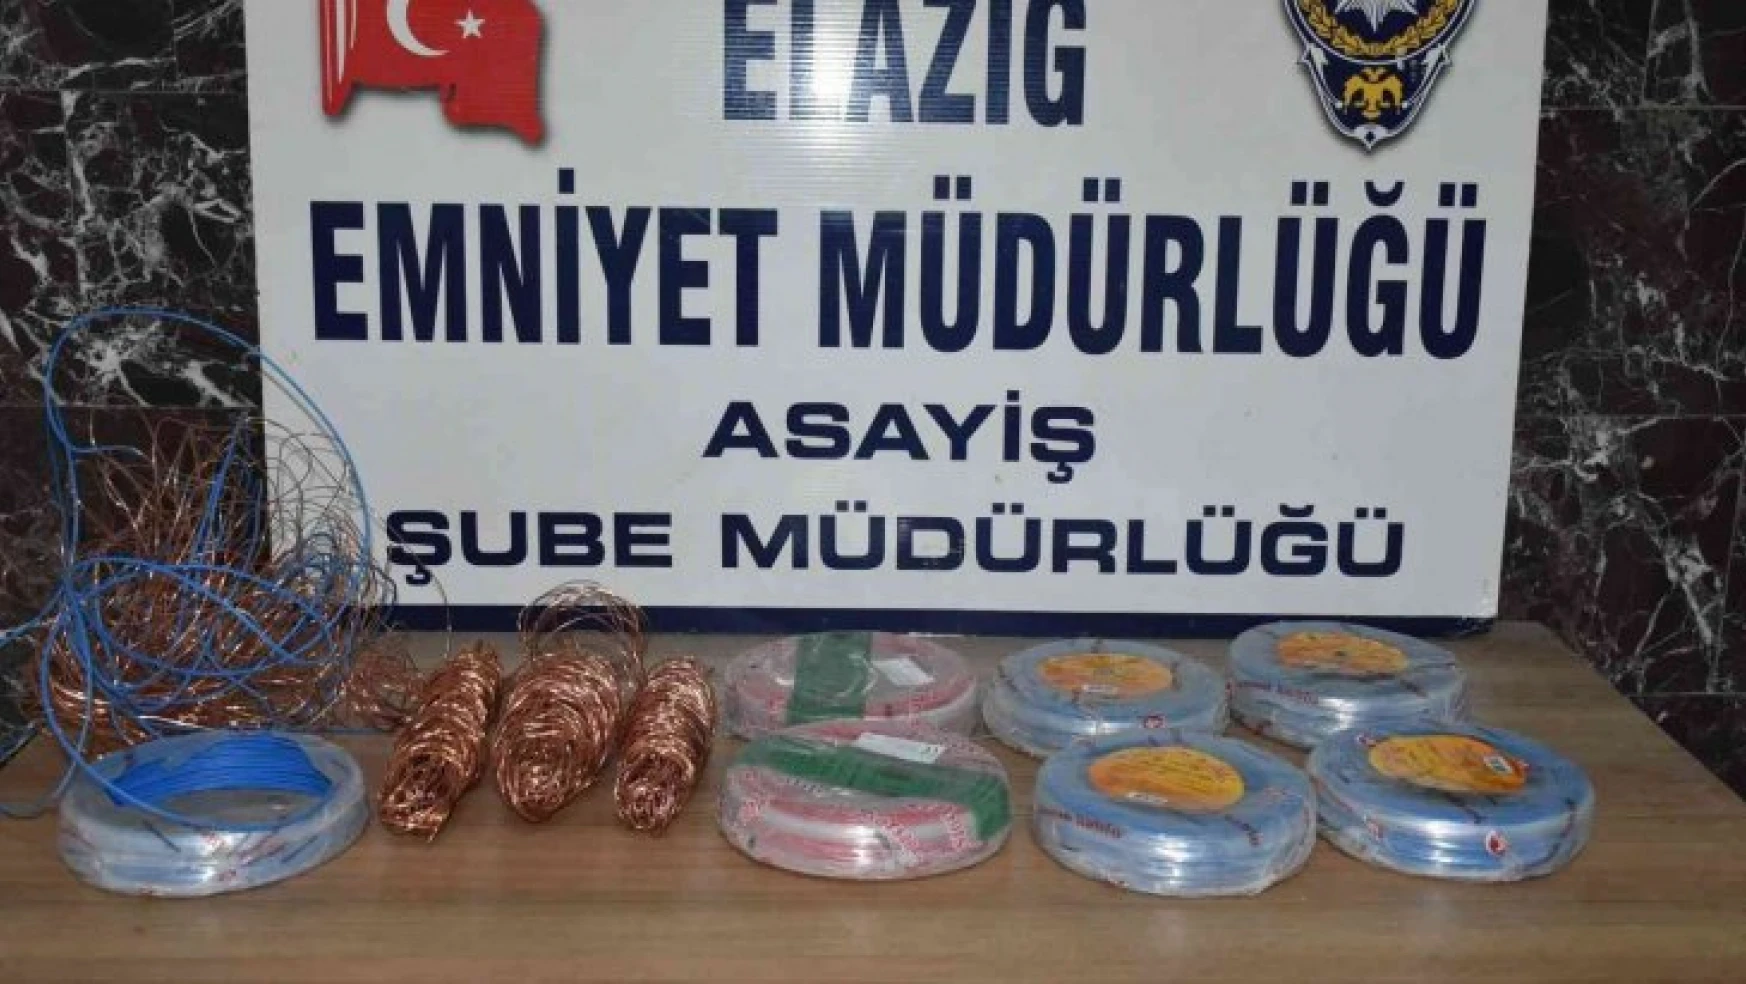 Elazığ'da 21 suç kaydı bulunan 2 şüpheli, çaldıkları kabloları yakarken yakalandı